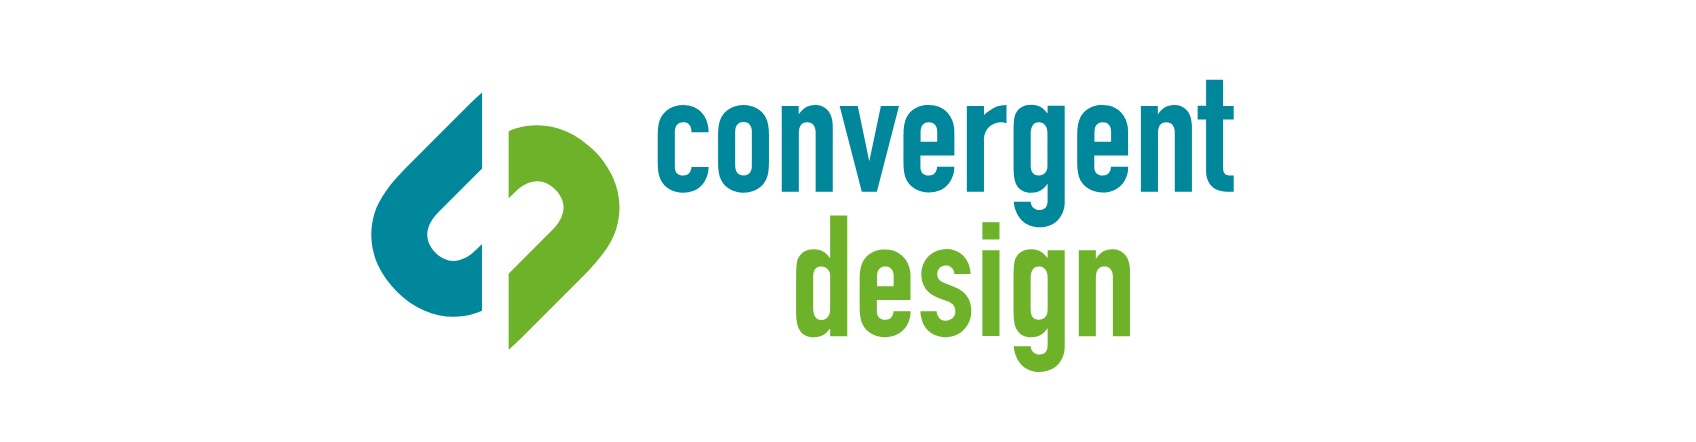 Convergent Design logo catts camera